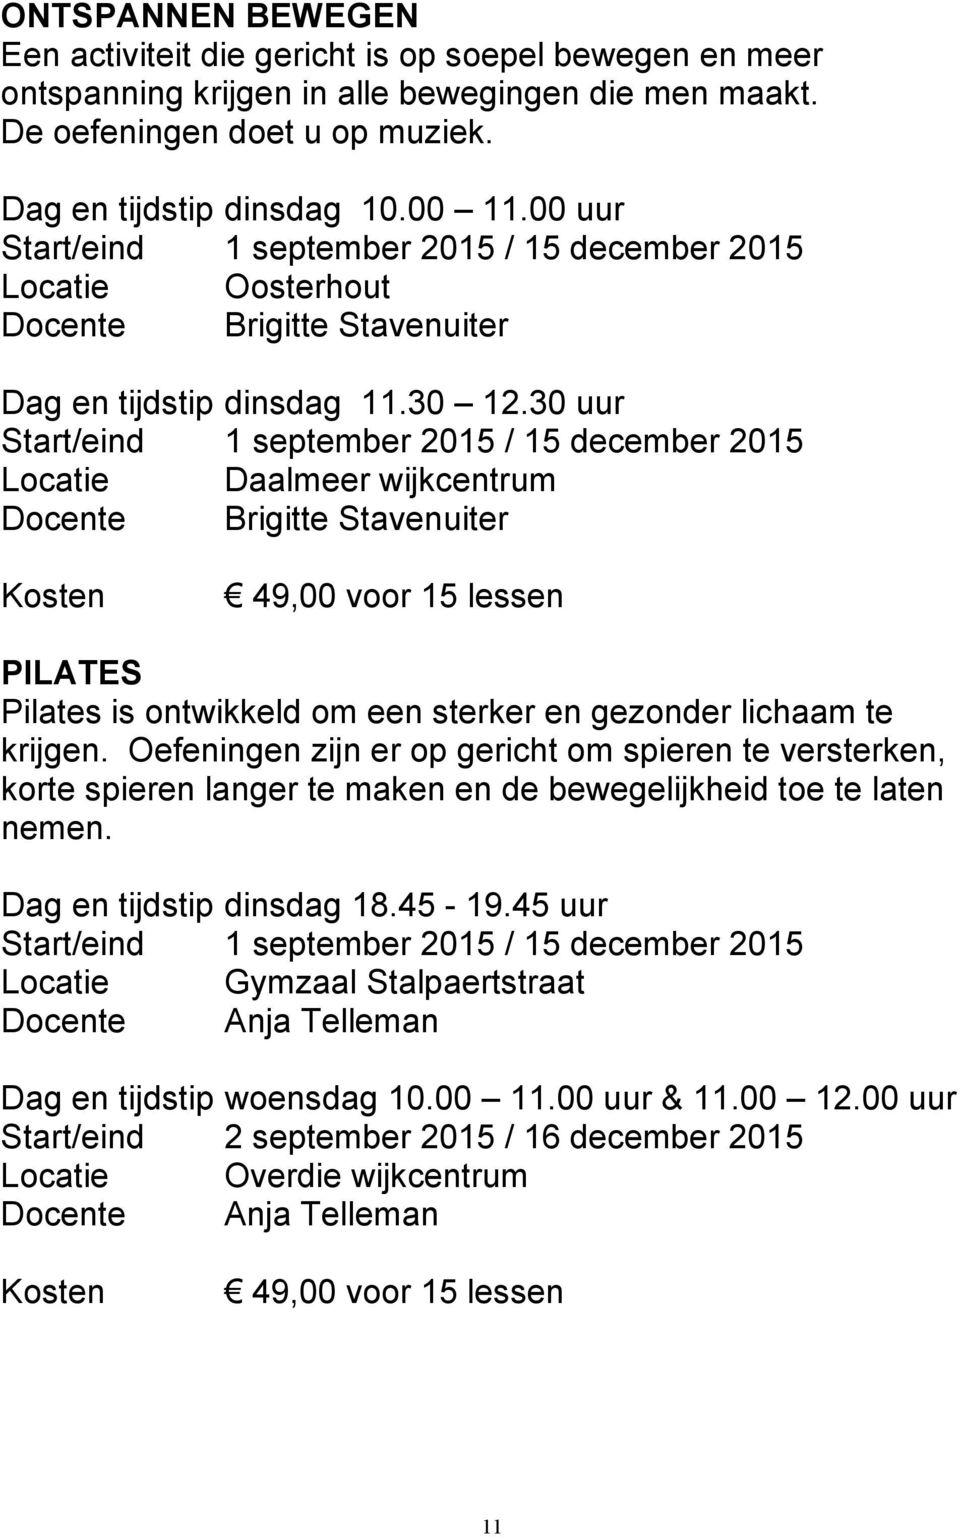 30 uur Start/eind 1 september 2015 / 15 december 2015 Locatie Daalmeer wijkcentrum Docente Brigitte Stavenuiter Kosten 49,00 voor 15 lessen PILATES Pilates is ontwikkeld om een sterker en gezonder